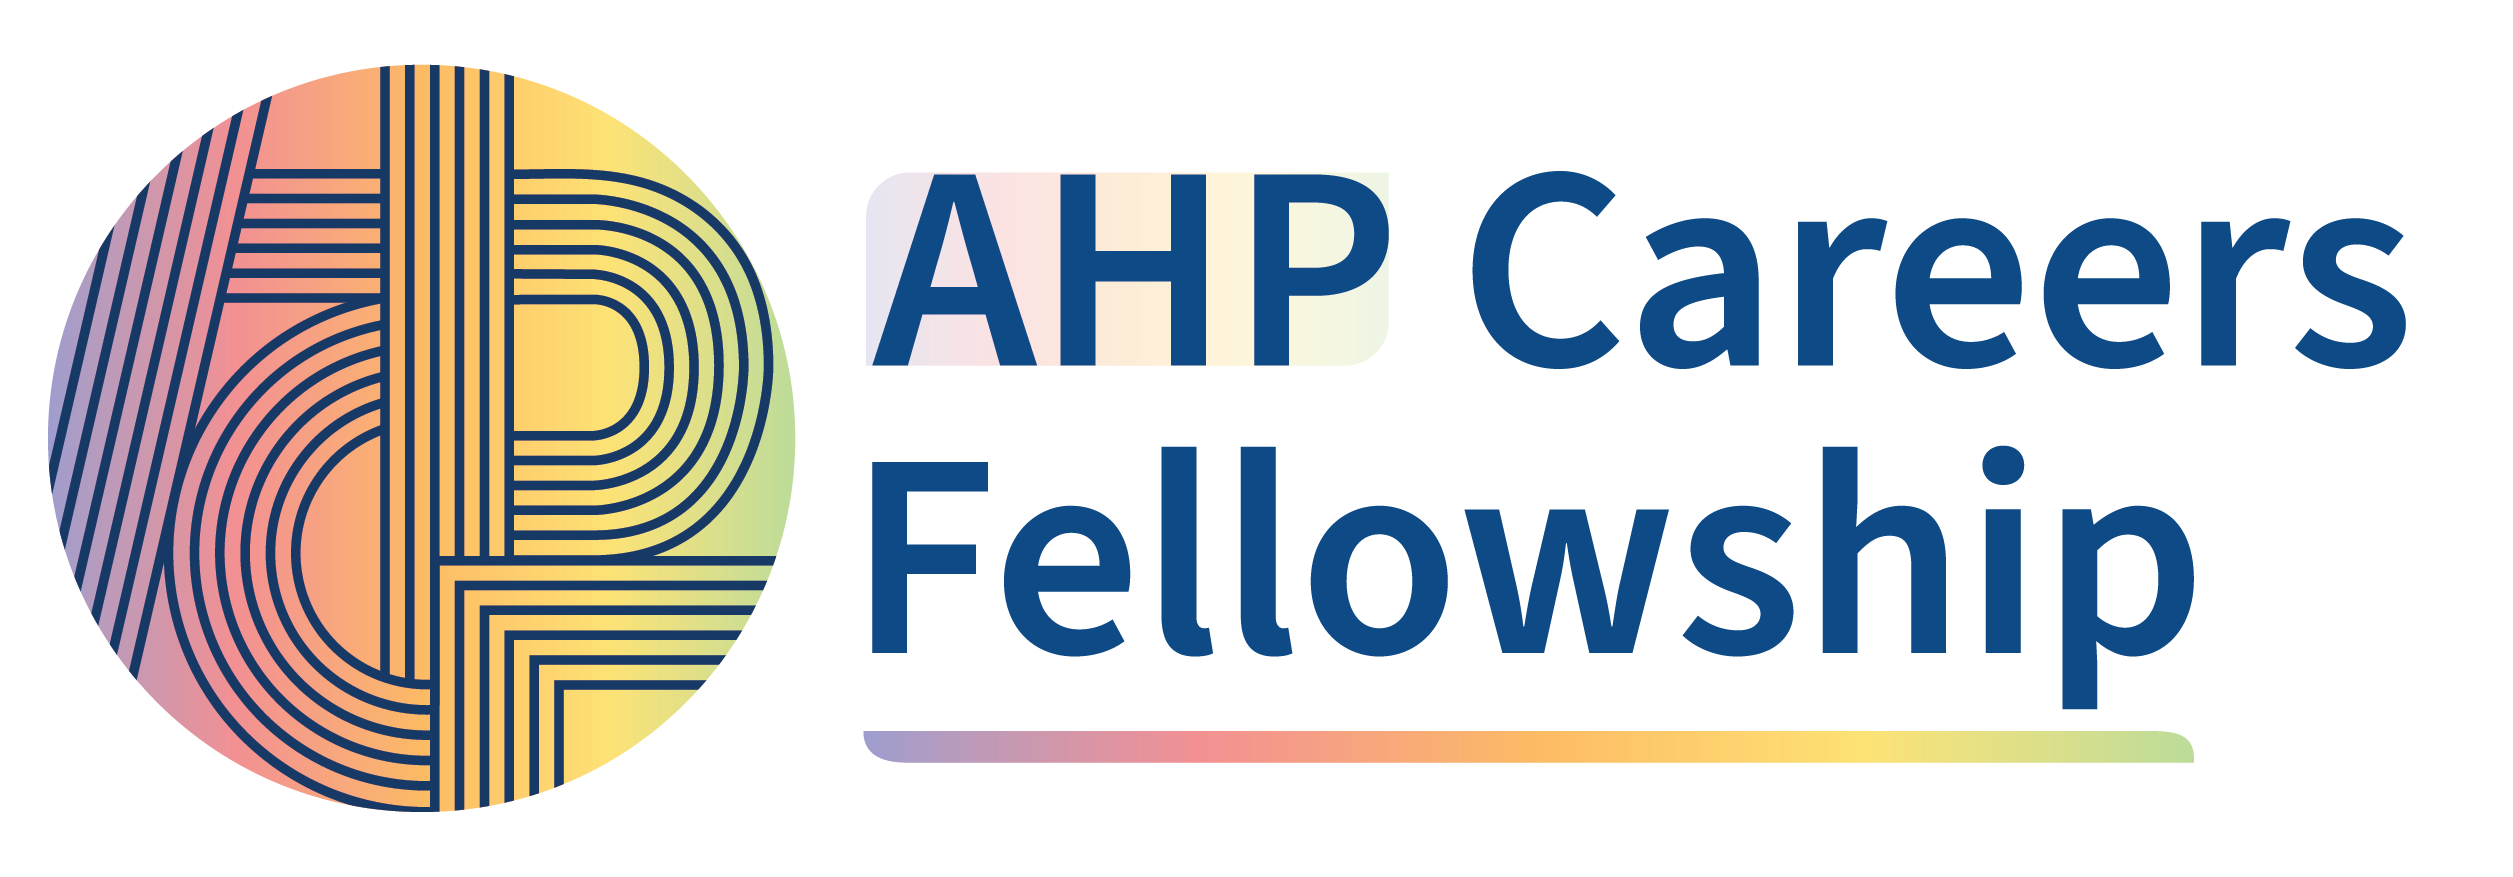 AHP Careers Fellowship